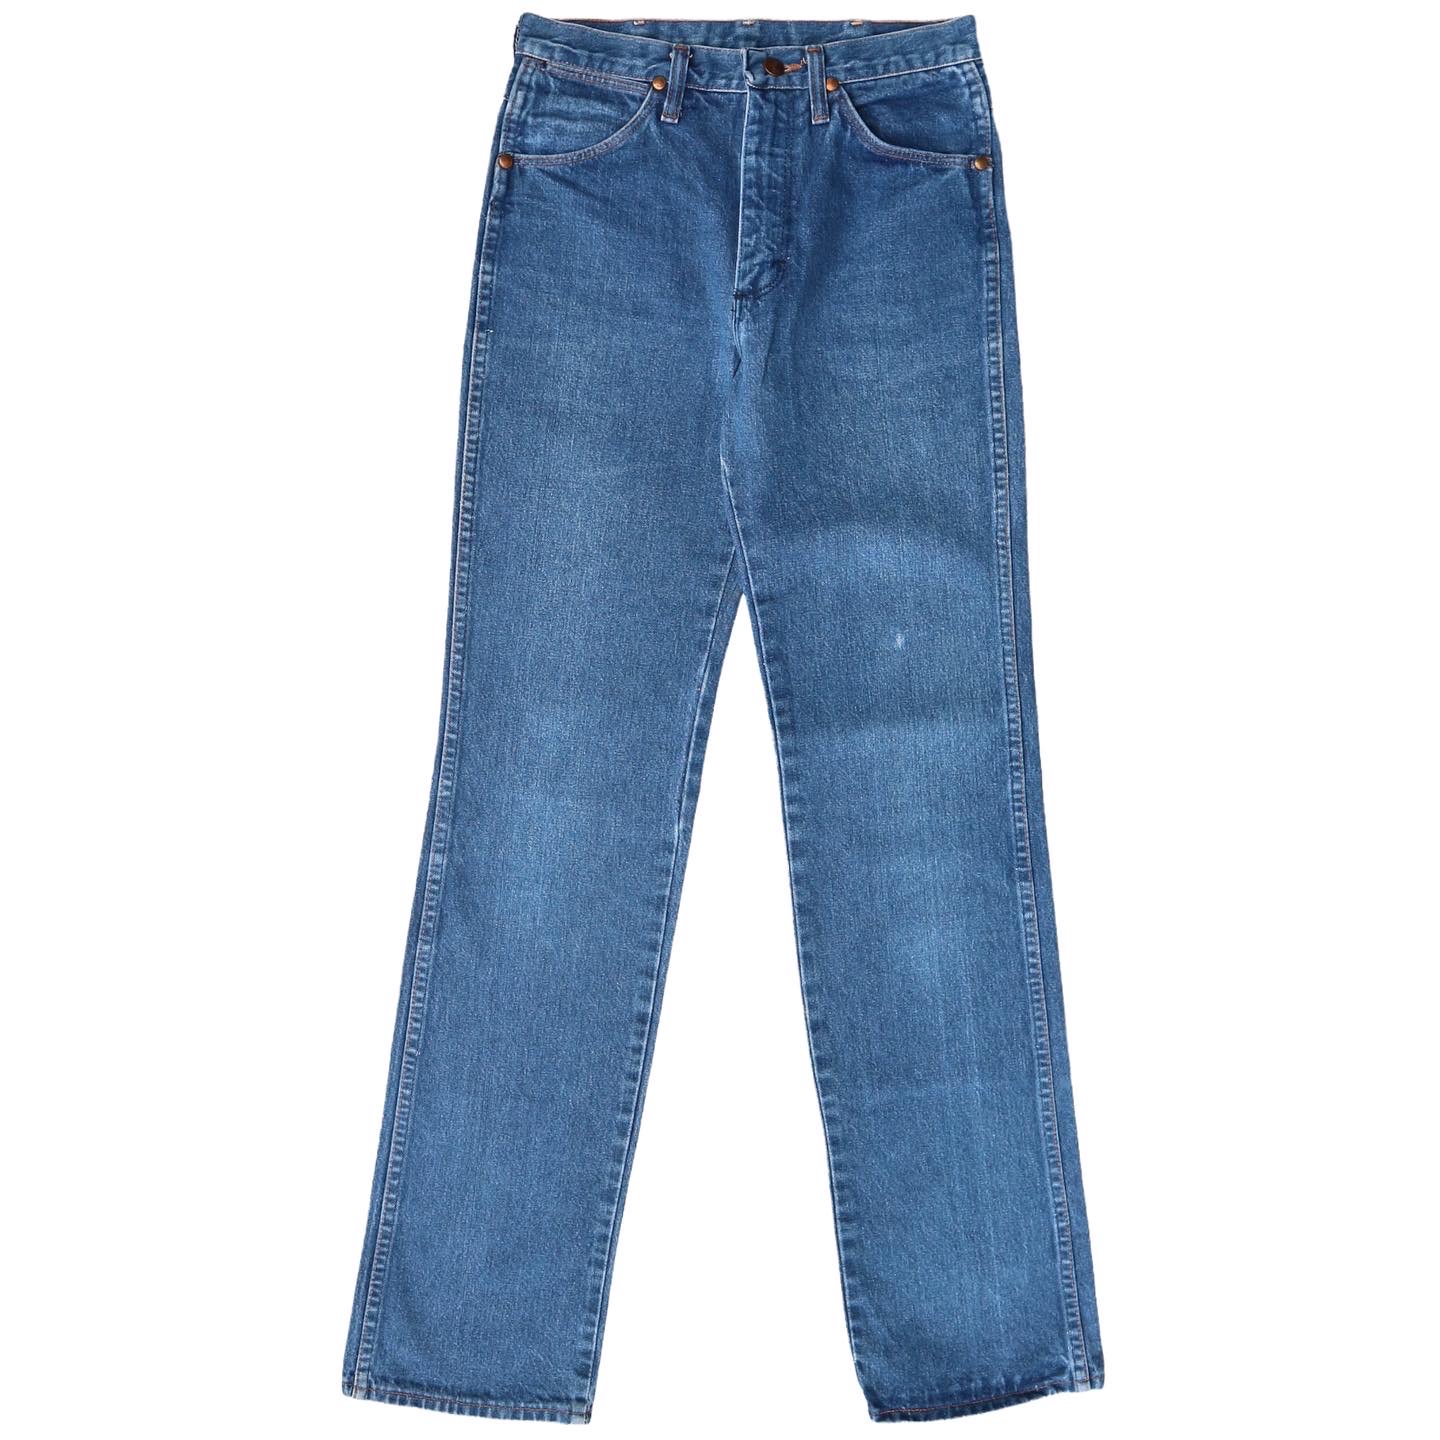 Wrangler Jeans Size 27 denimister